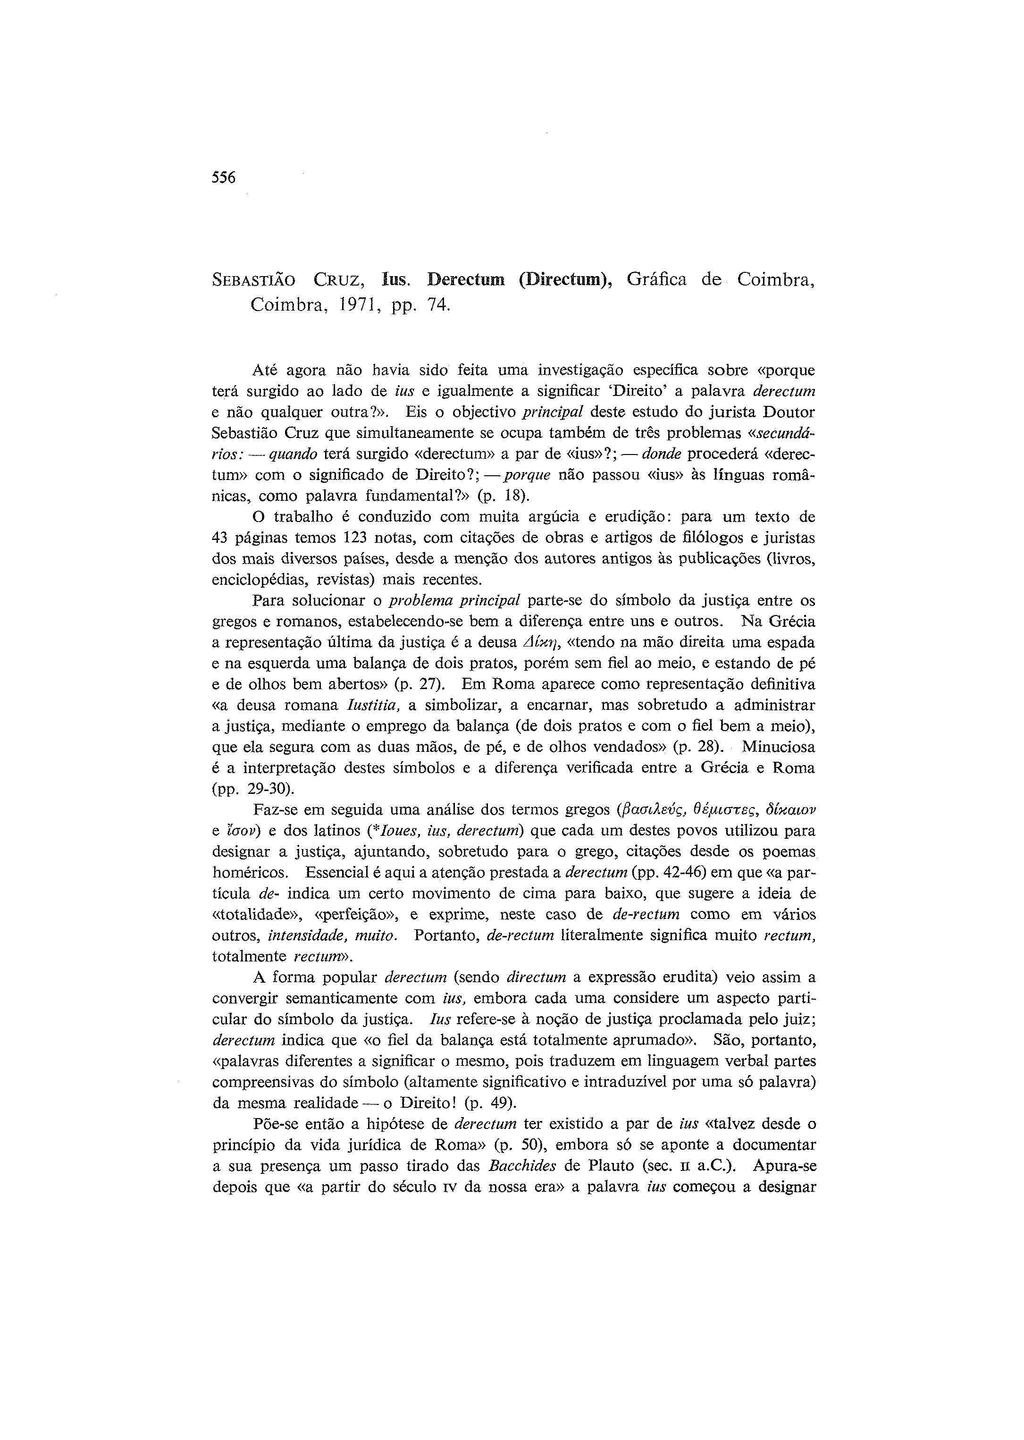 556 SEBASTIãO CRUZ, IUS. Derectum (Directum), Gráfica de Coimbra, Coimbra, 1971, pp. 74.